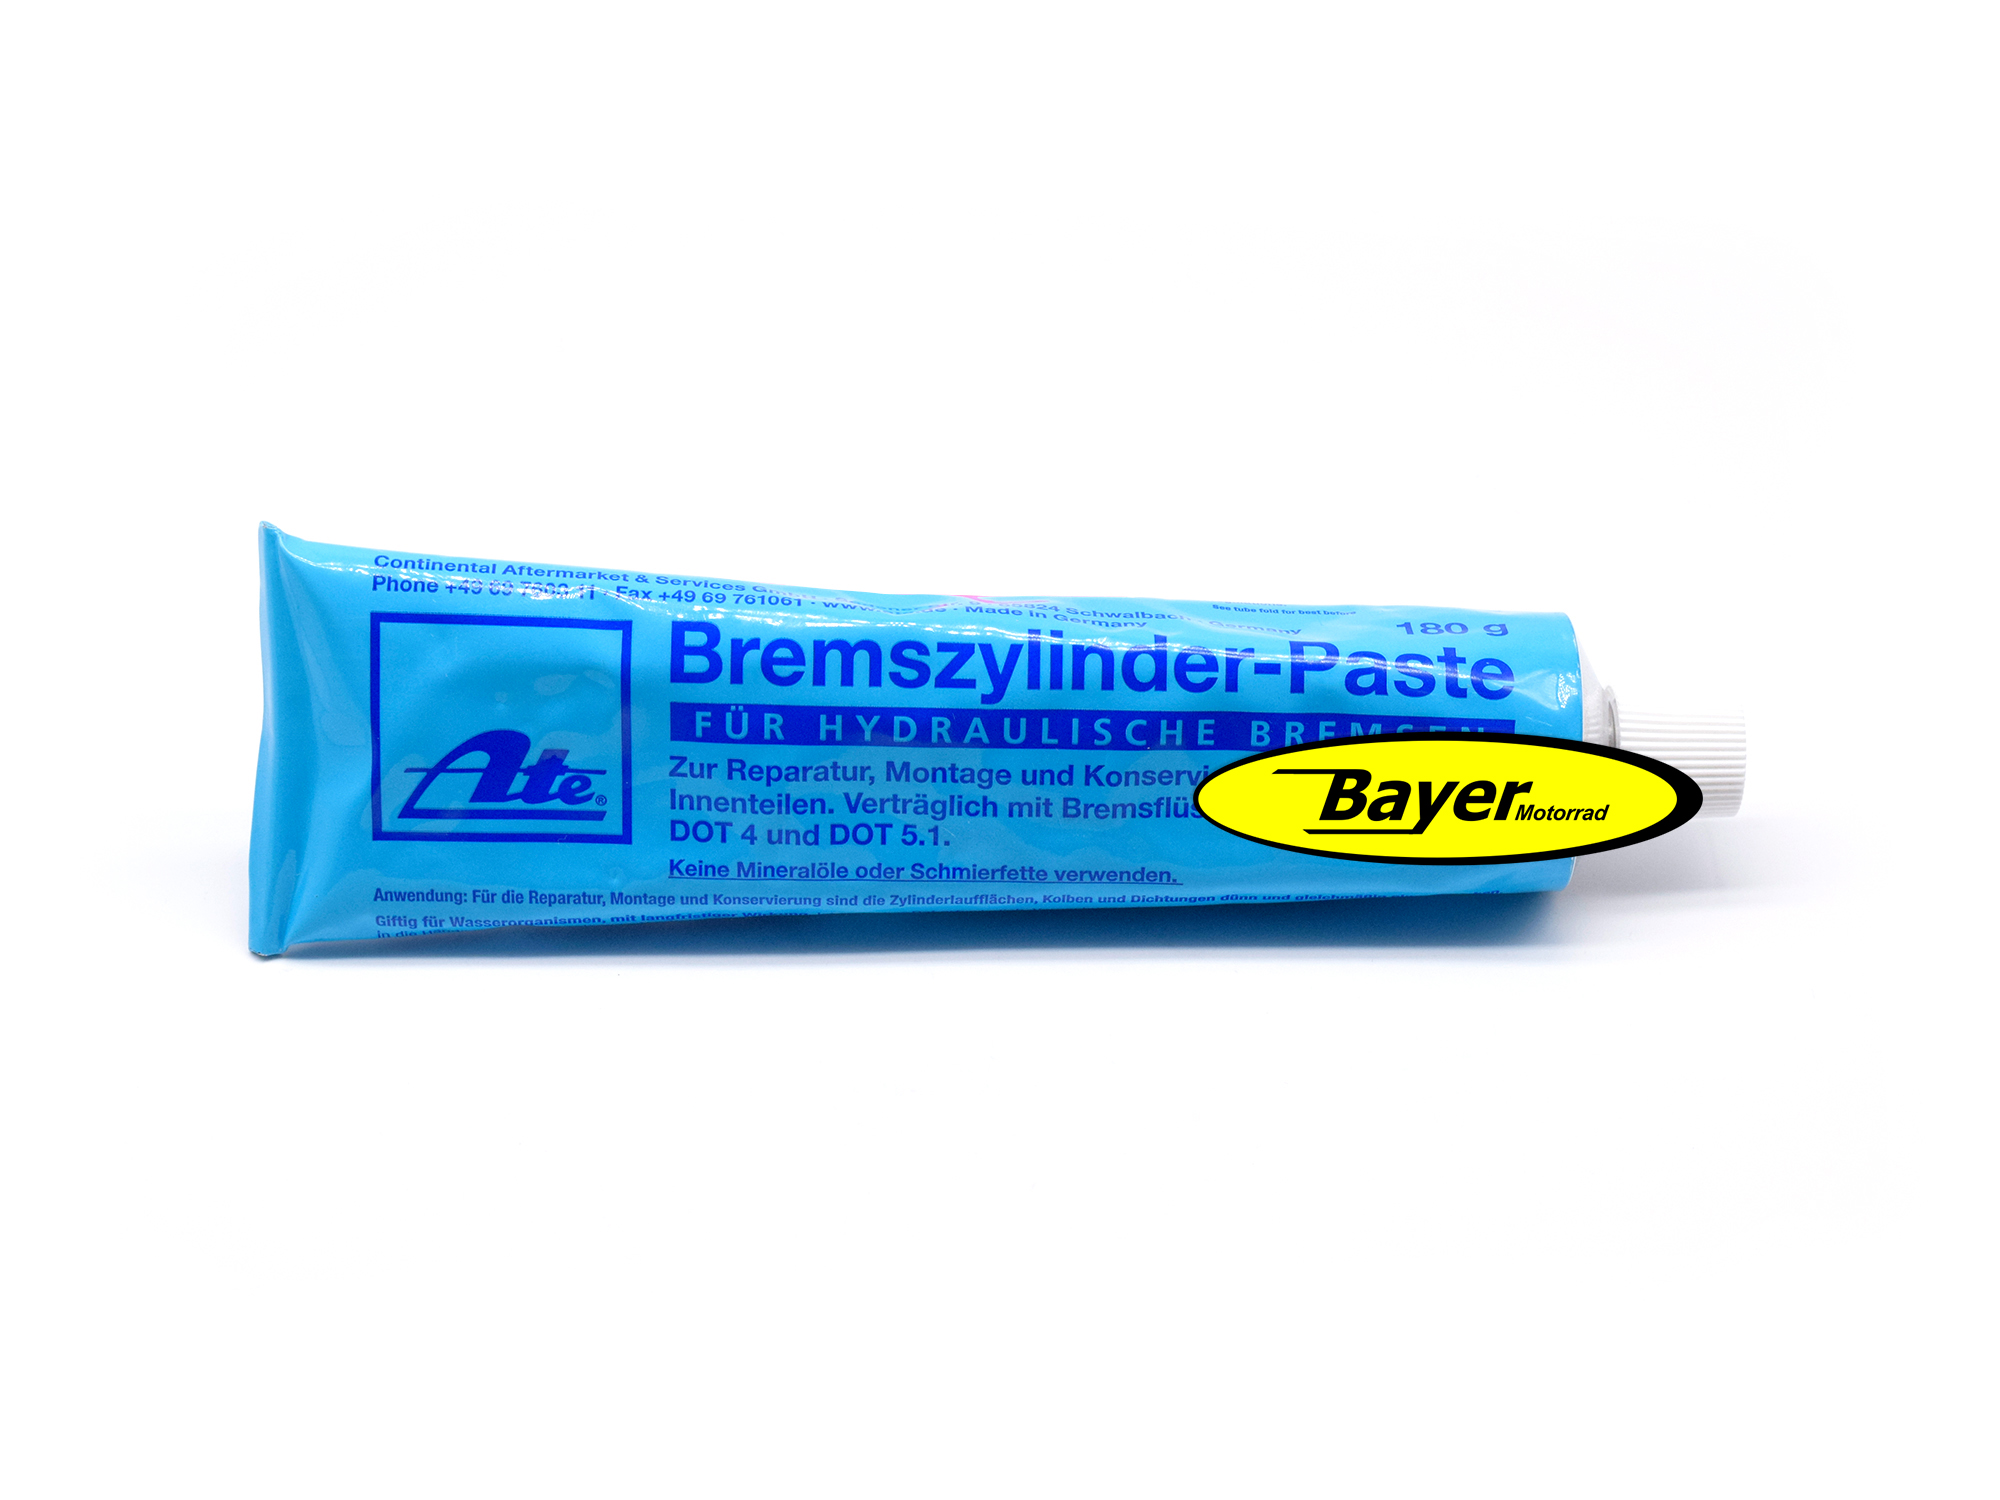 https://www.bayermotor.de/media/images/org/8122113-Bremszylinder-Paste_180Gramm_Tube_BMW_und_universal.jpg